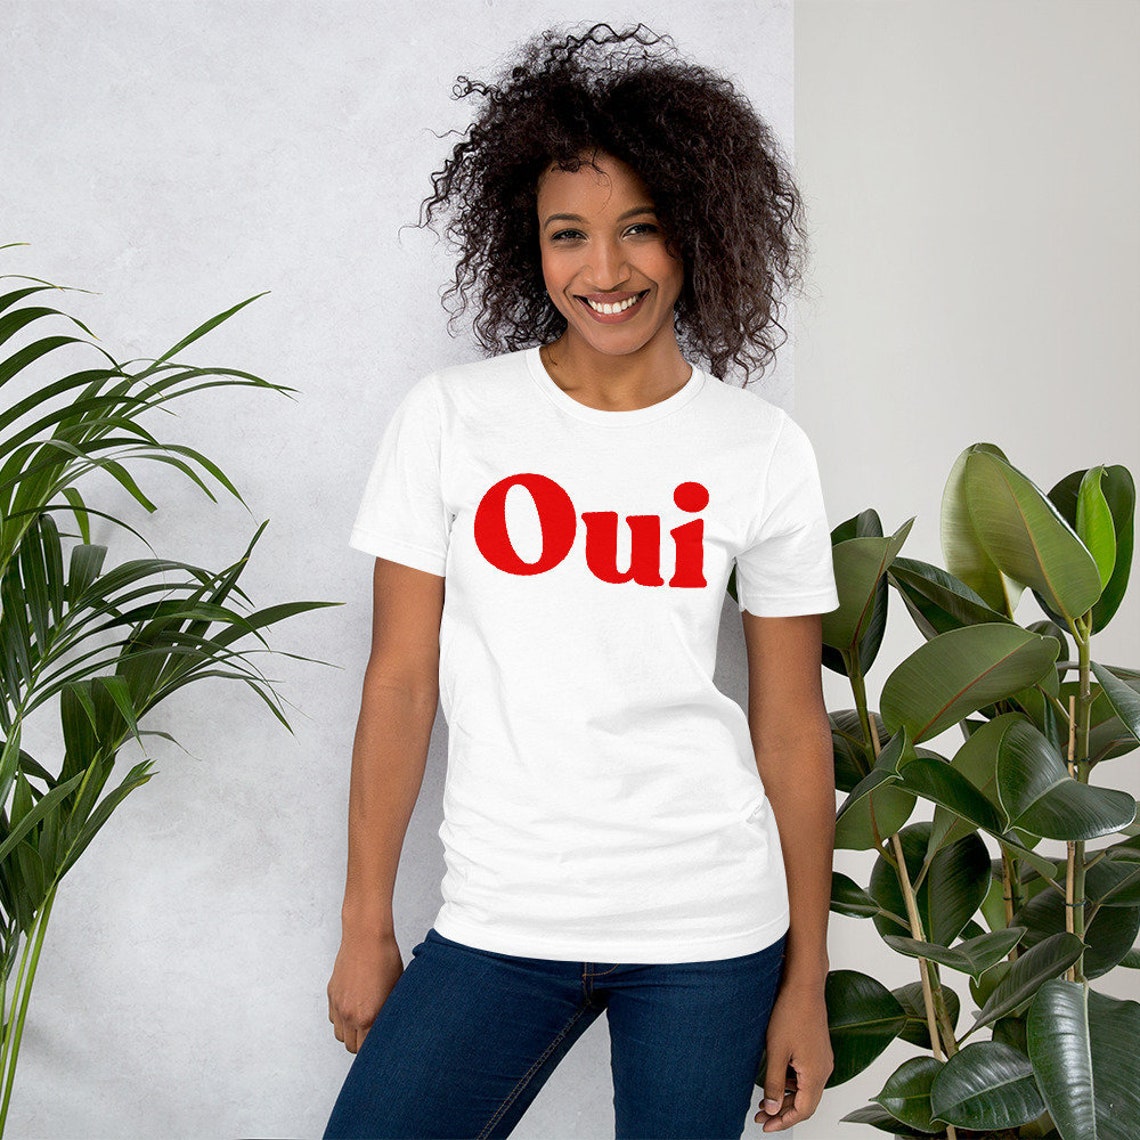 Oui T Shirt Oui Tshirt French Shirt Women & Men French | Etsy